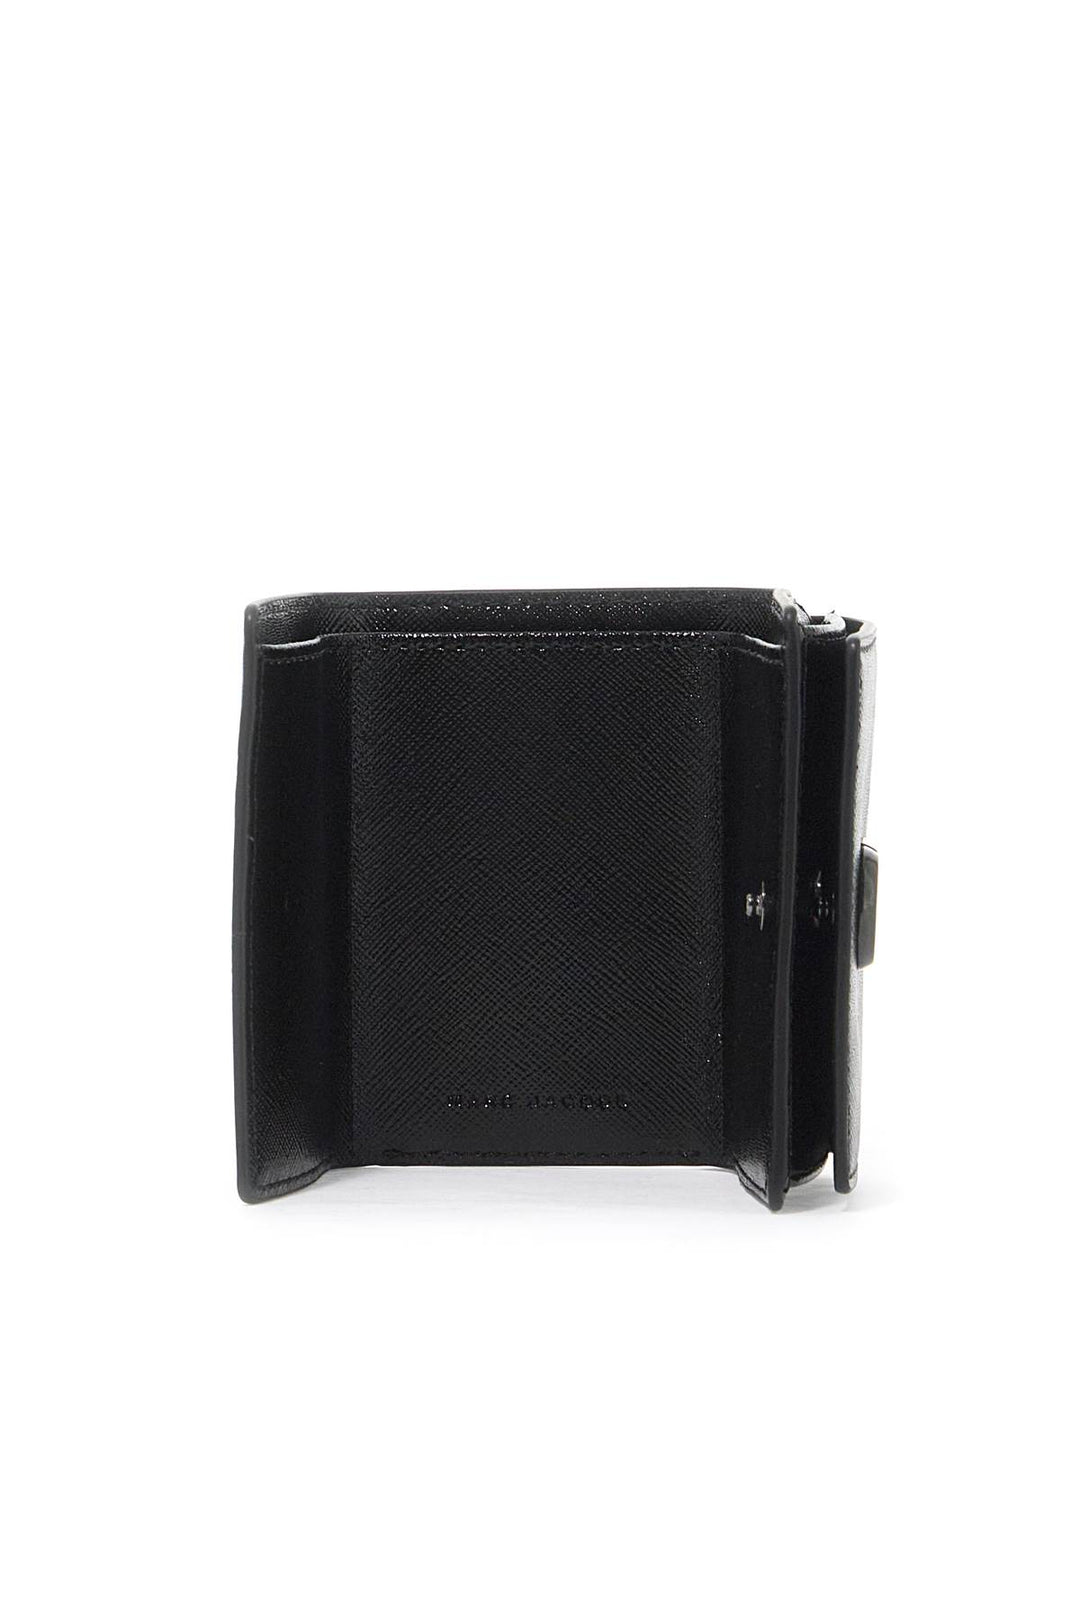 Marc Jacobs Portafoglio The Utility Dtm Mini Trifold Wallet   Black